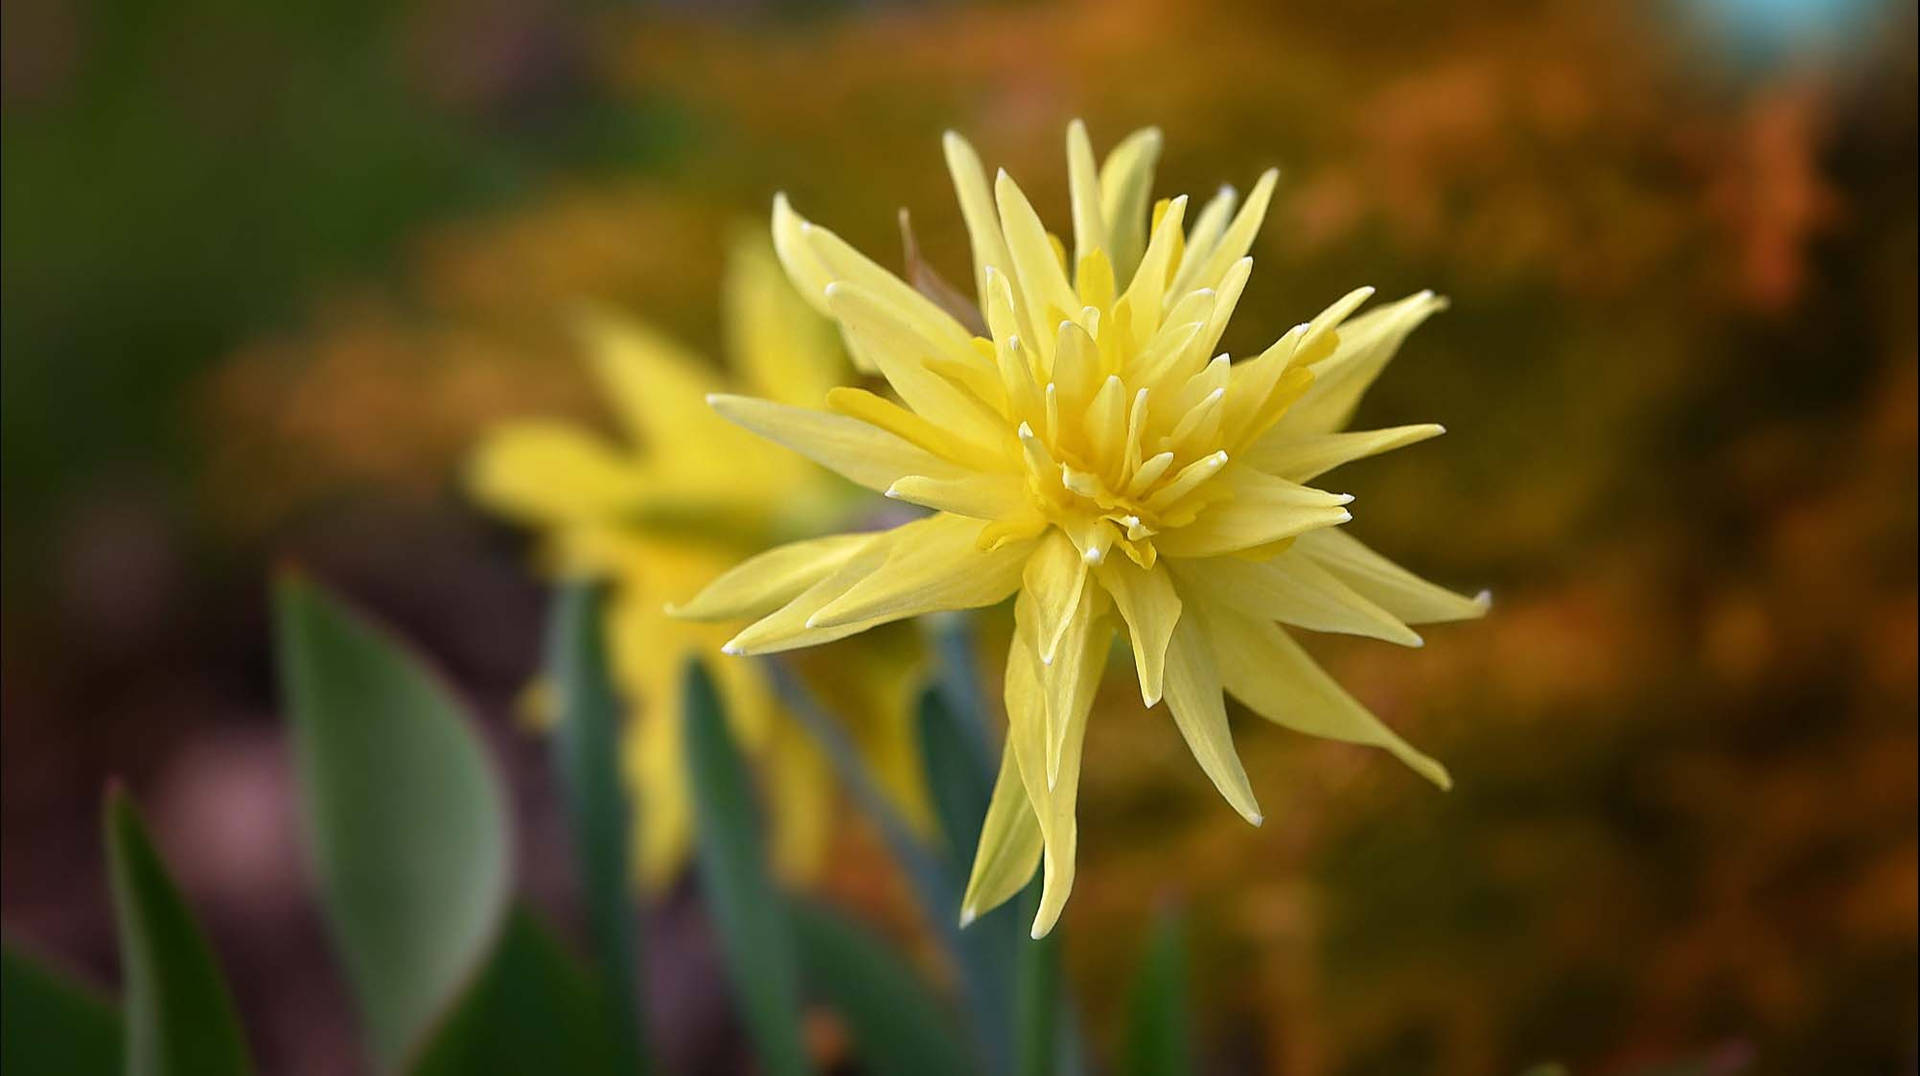 Rip Van Winkle Narcissus Flower